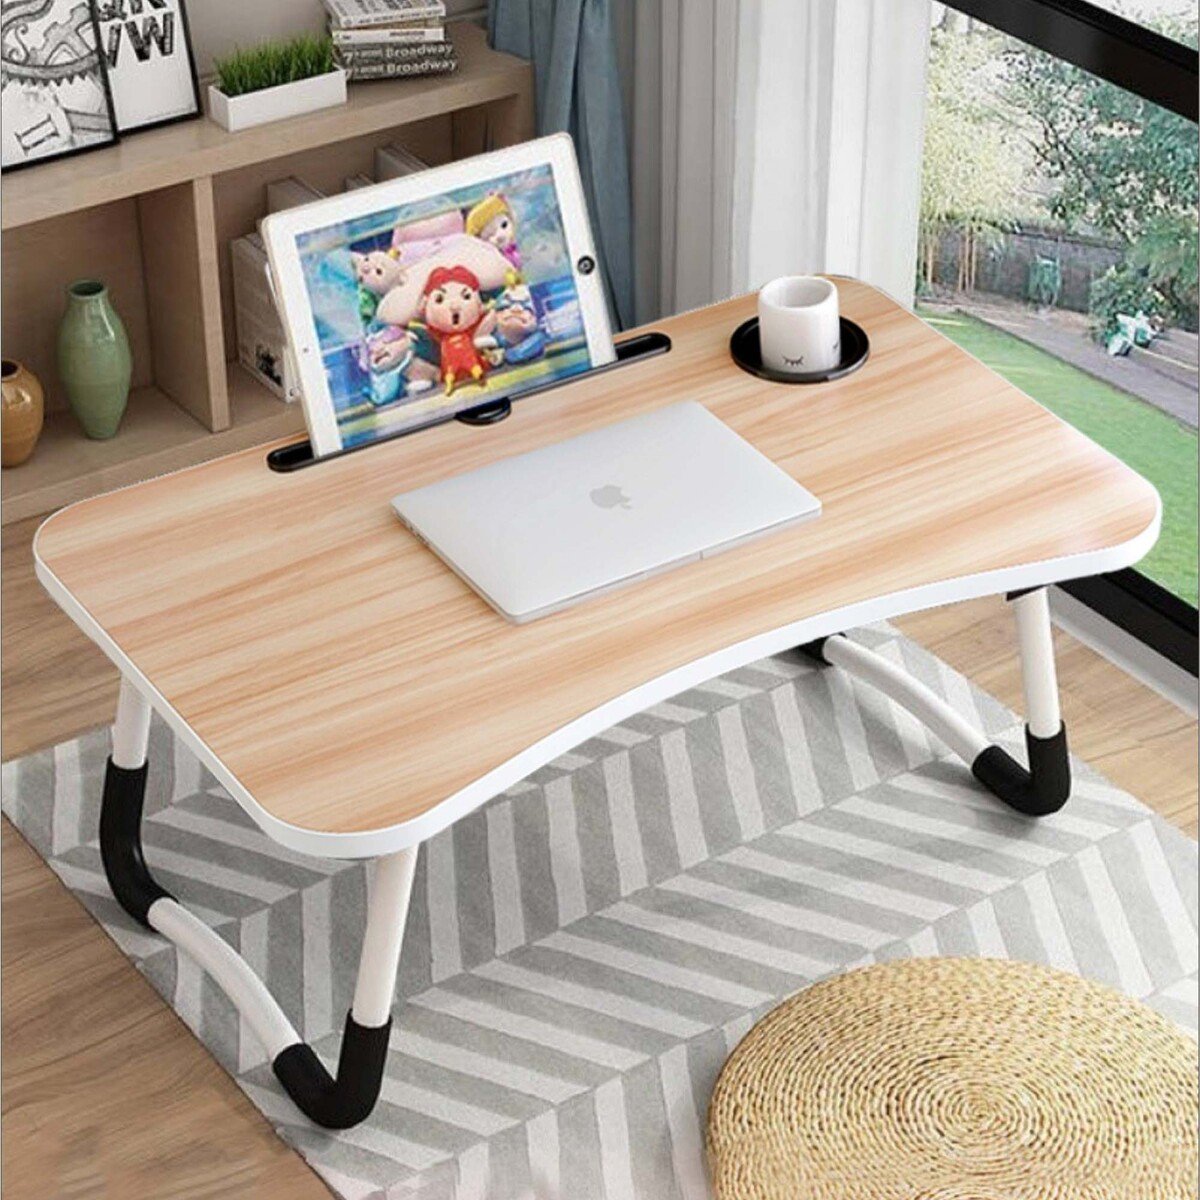 مابل ليف هوم طاولة قابلة للطي متعددة الأغراض خشب الزان الحجم: عرض 60 × عمق 40 × ارتفاع 26 سم